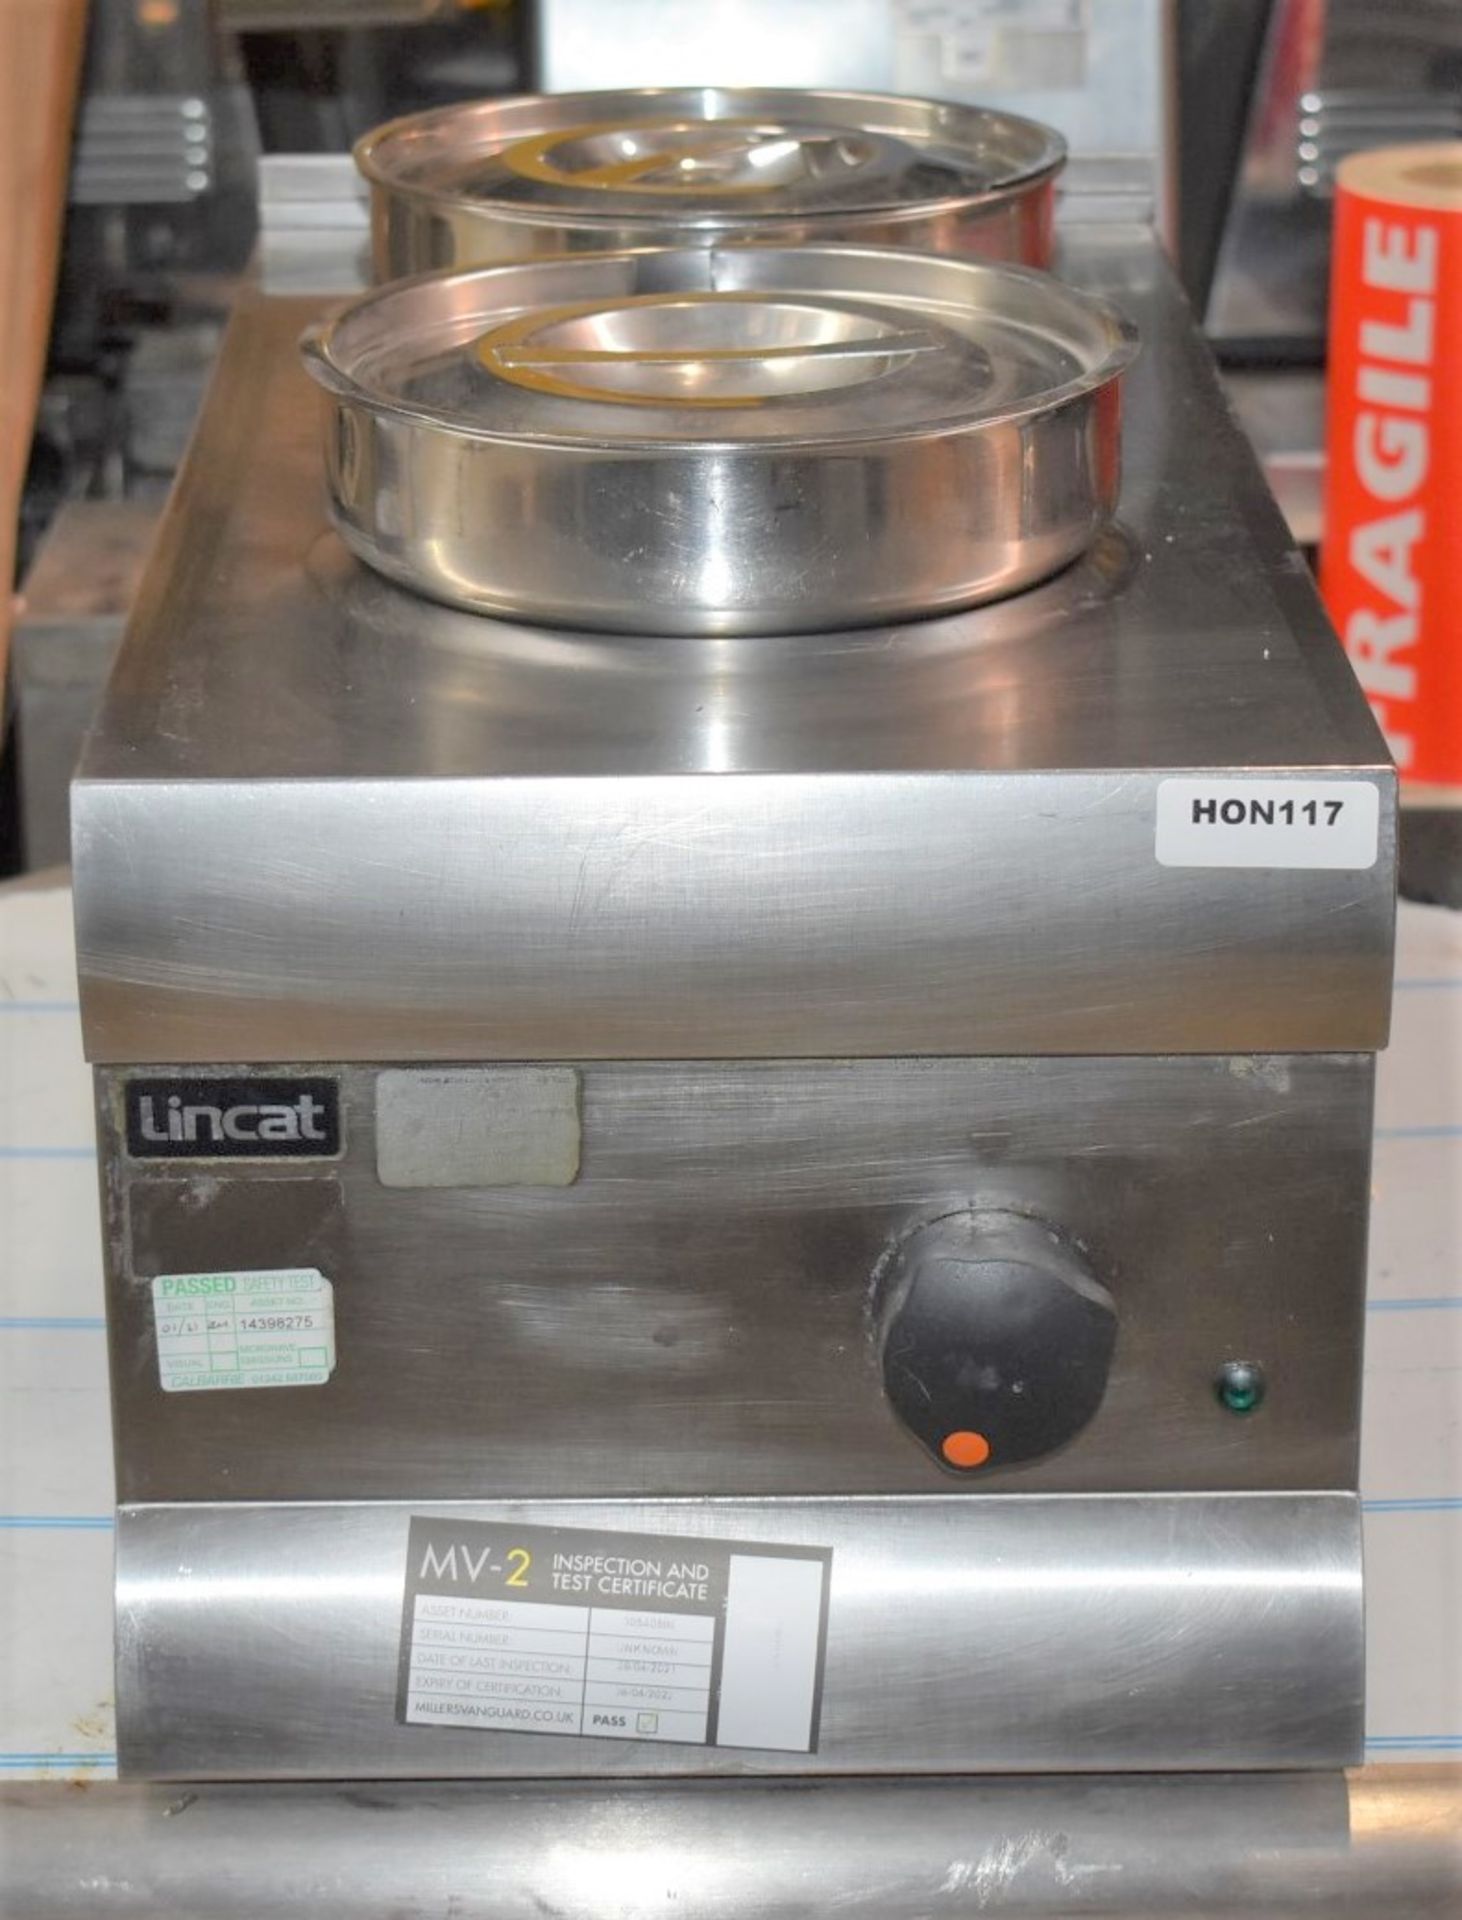 1 x Lincat Silverlink 600 Twin Pot Bain Marie - Model BS3 - 500W Dry Heat - 2x 4.5Ltr Pot With - Image 3 of 7